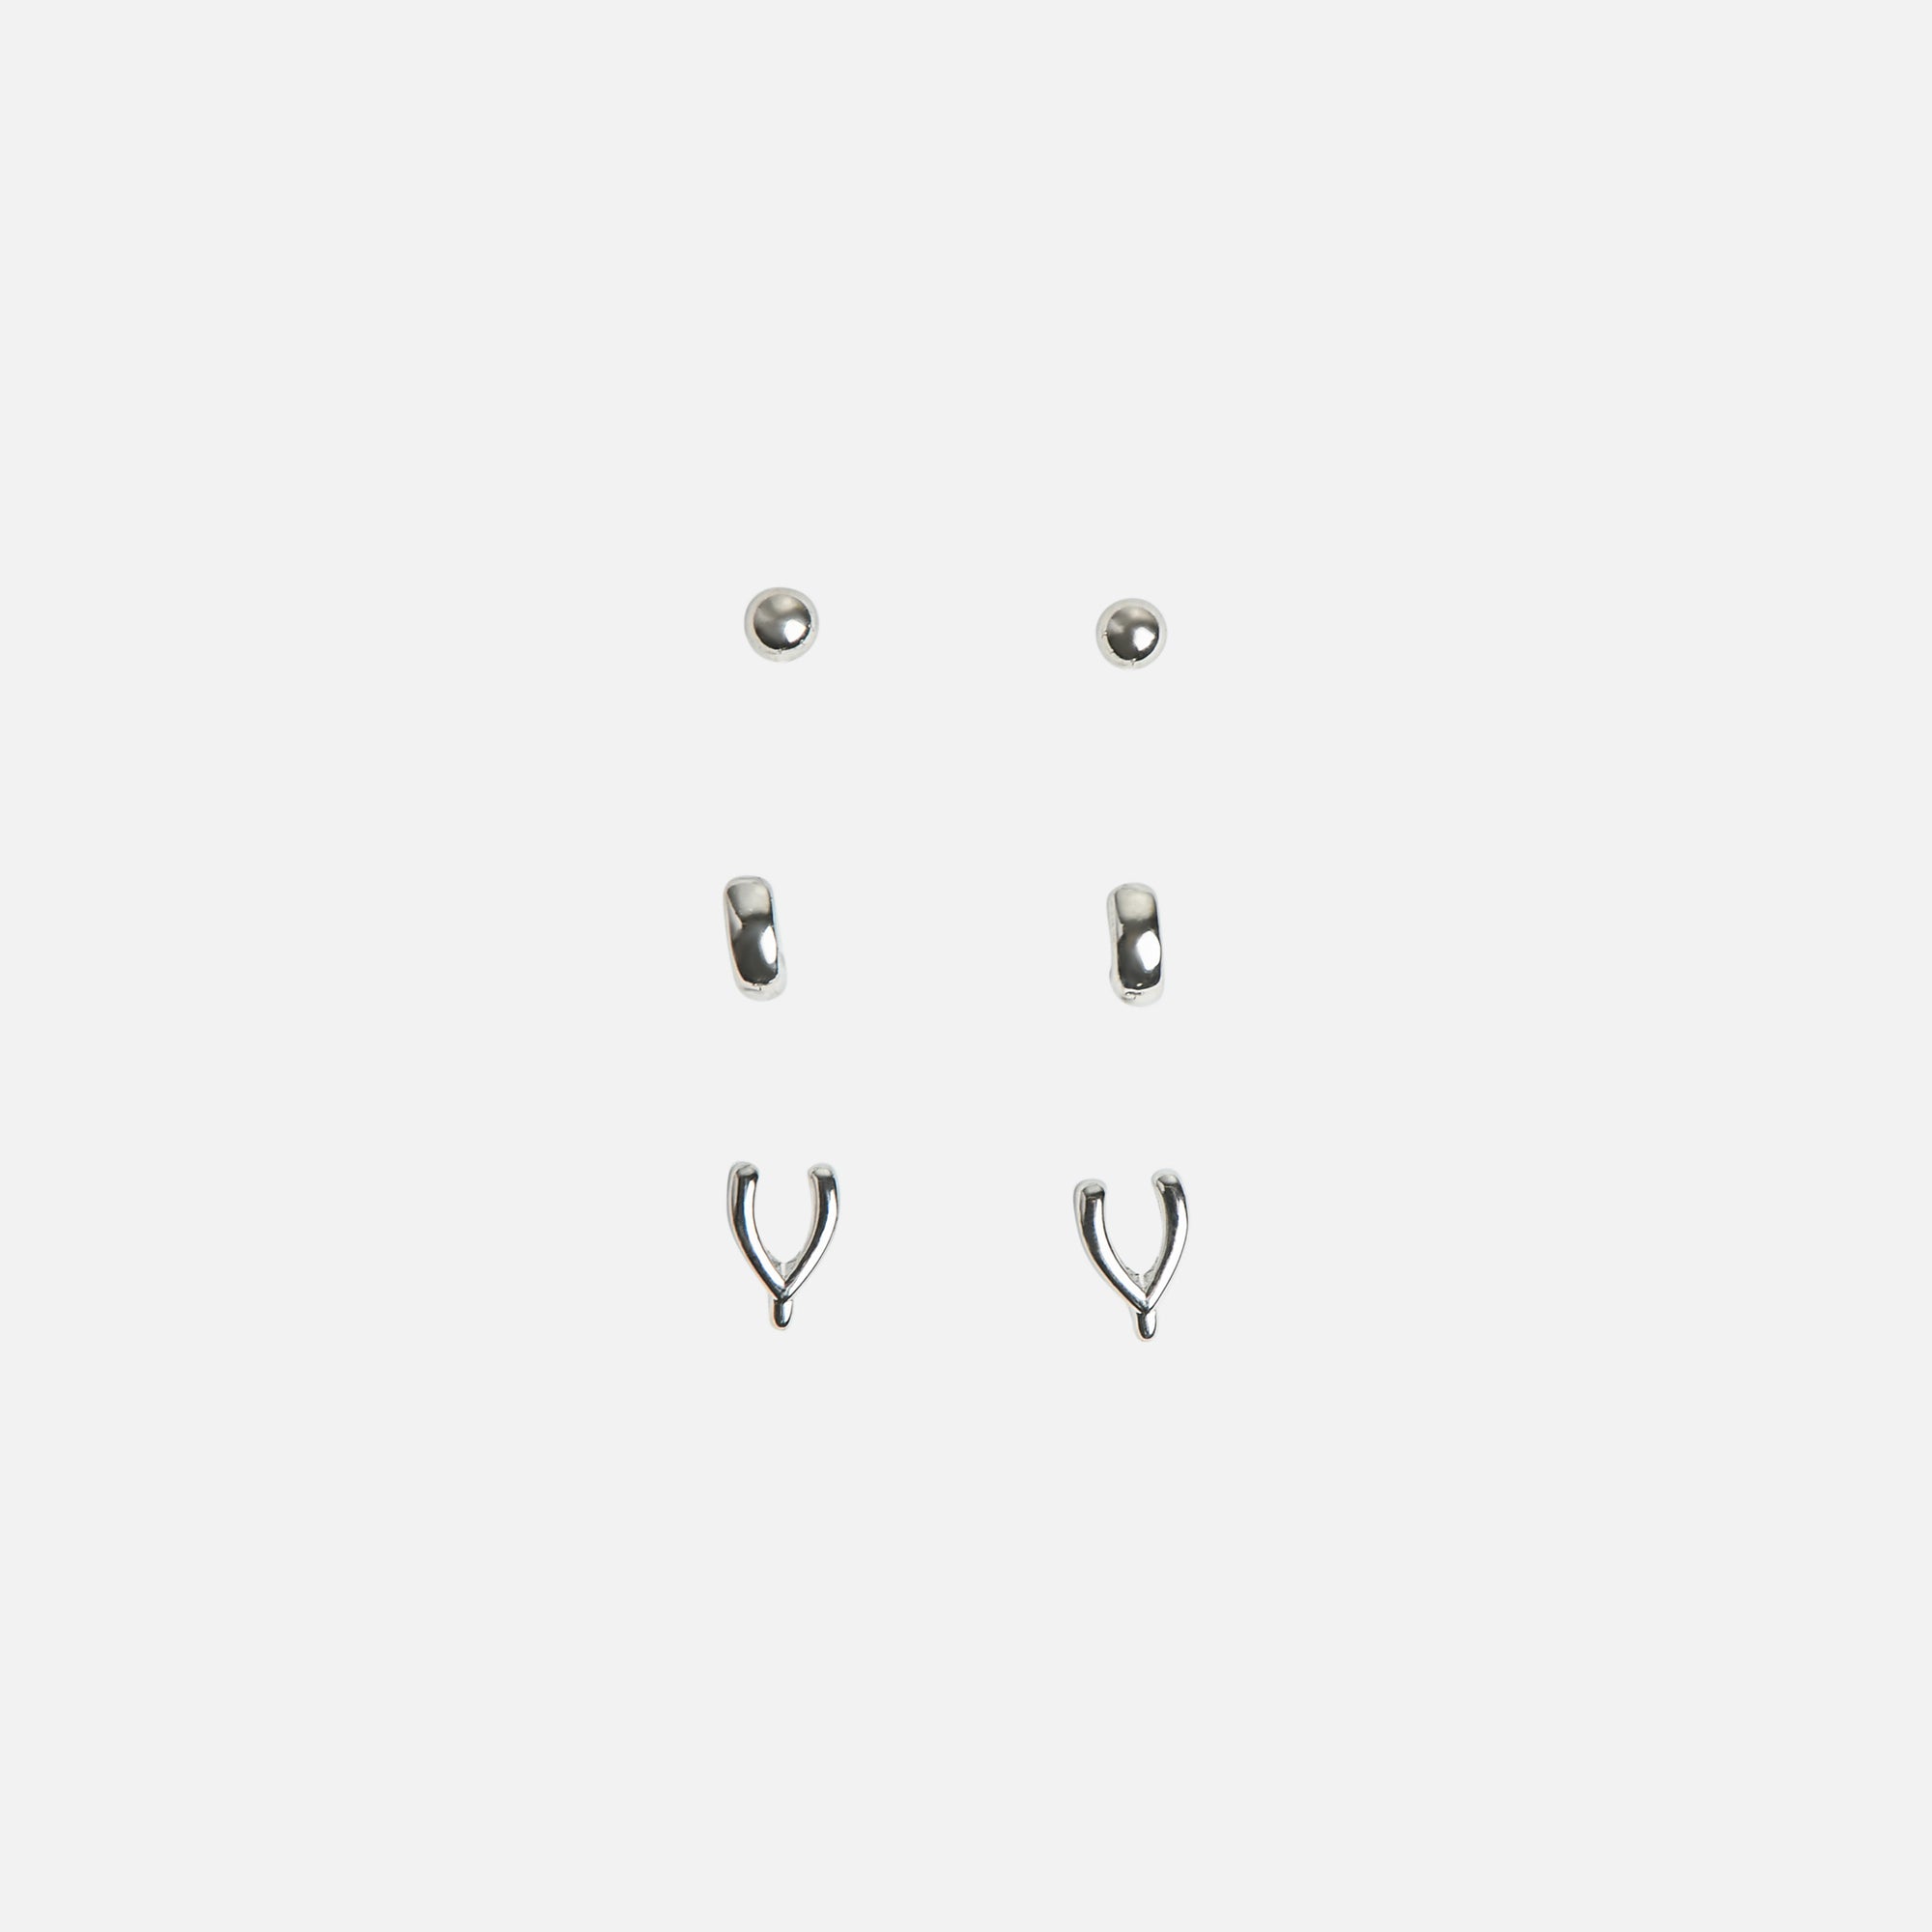 Trio de boucles d'oreilles argentées fixes, anneaux et bréchet